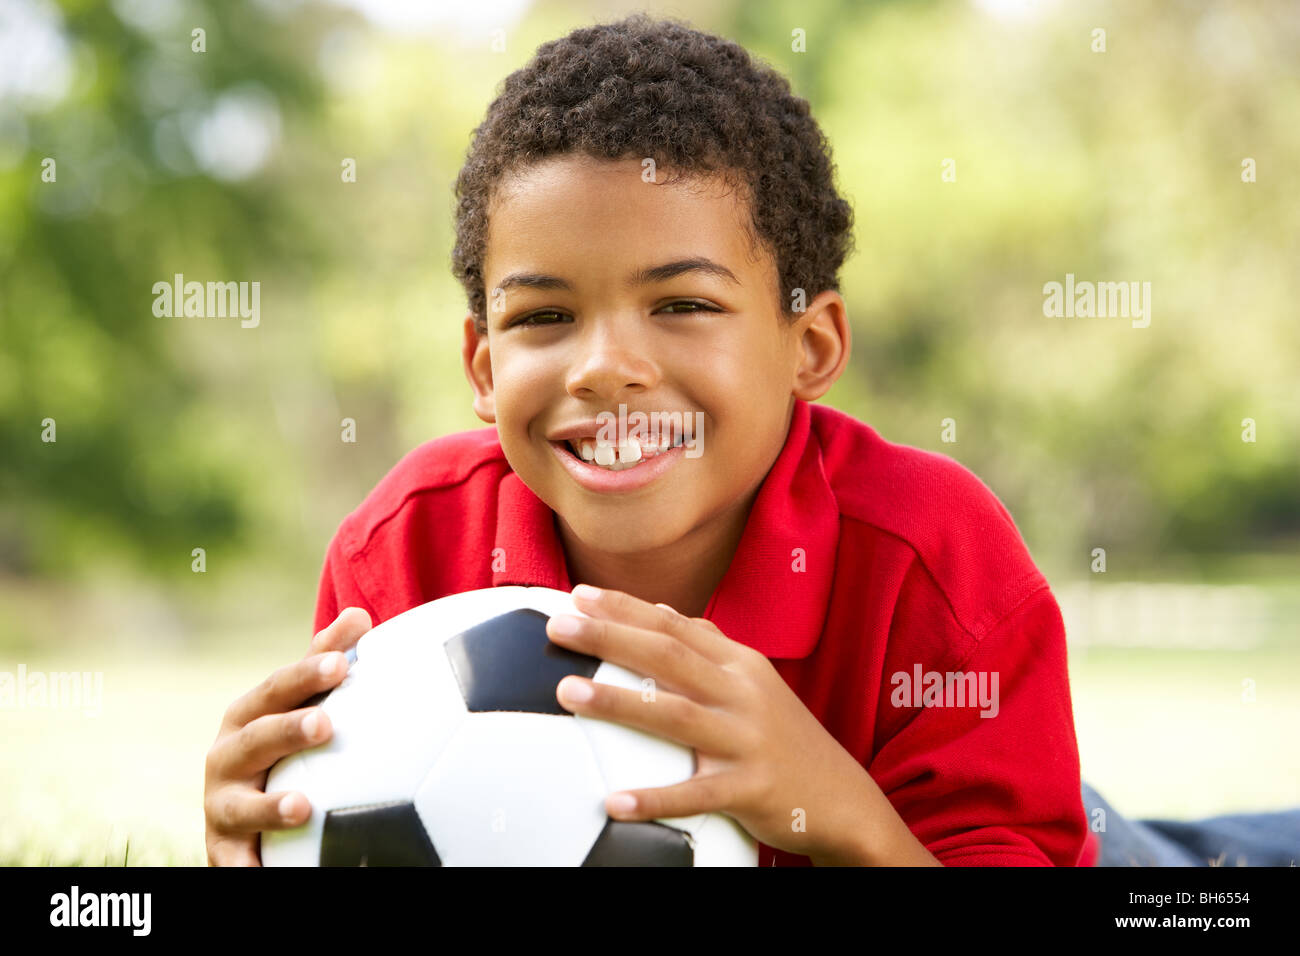 Il ragazzo nel parco con il calcio Foto Stock